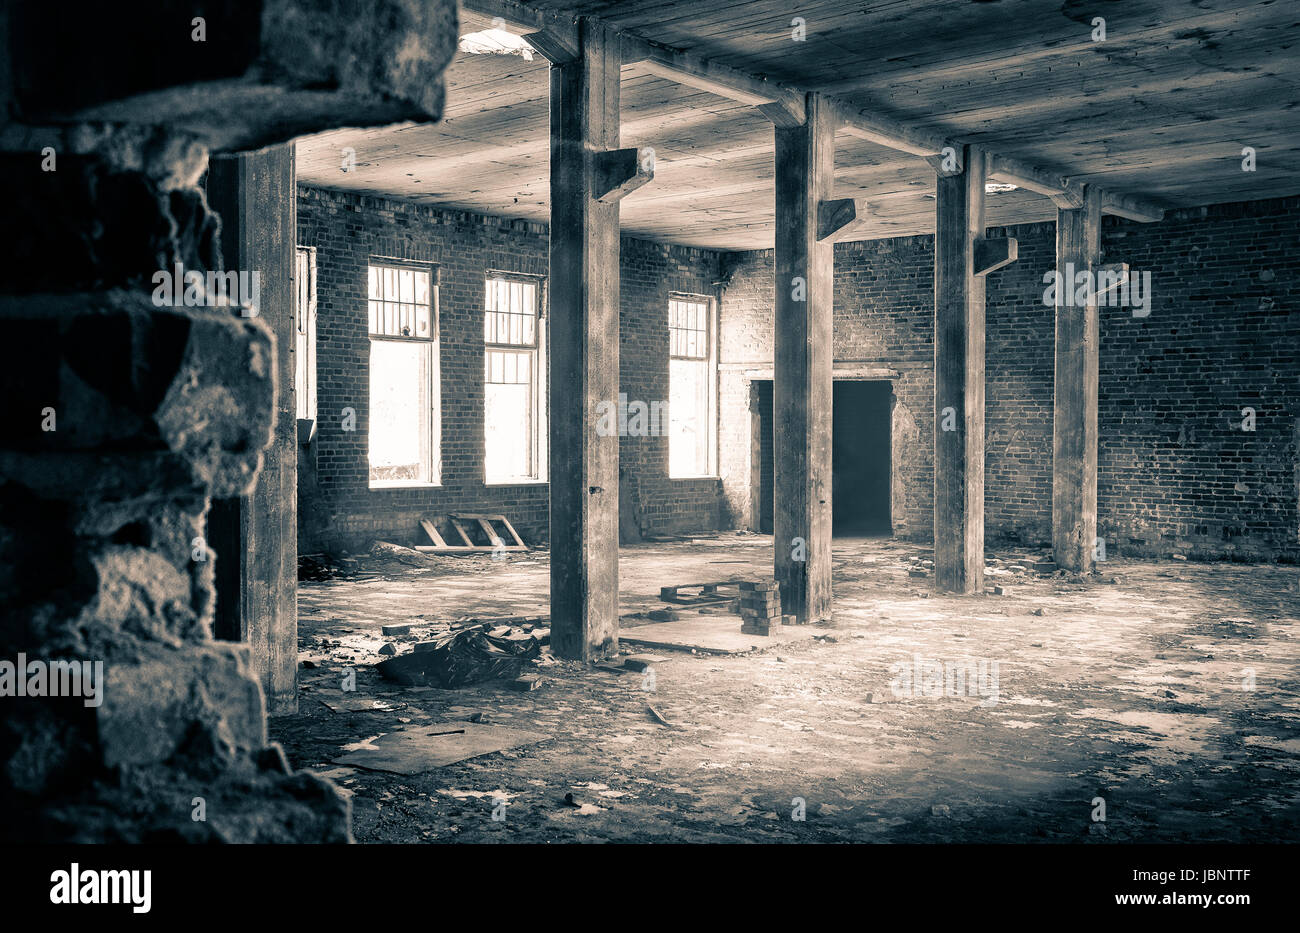 Die Aussicht aus einer alten, verlassenen Fabrik auf der Innenseite mit schönen Fensterlicht Stockfoto